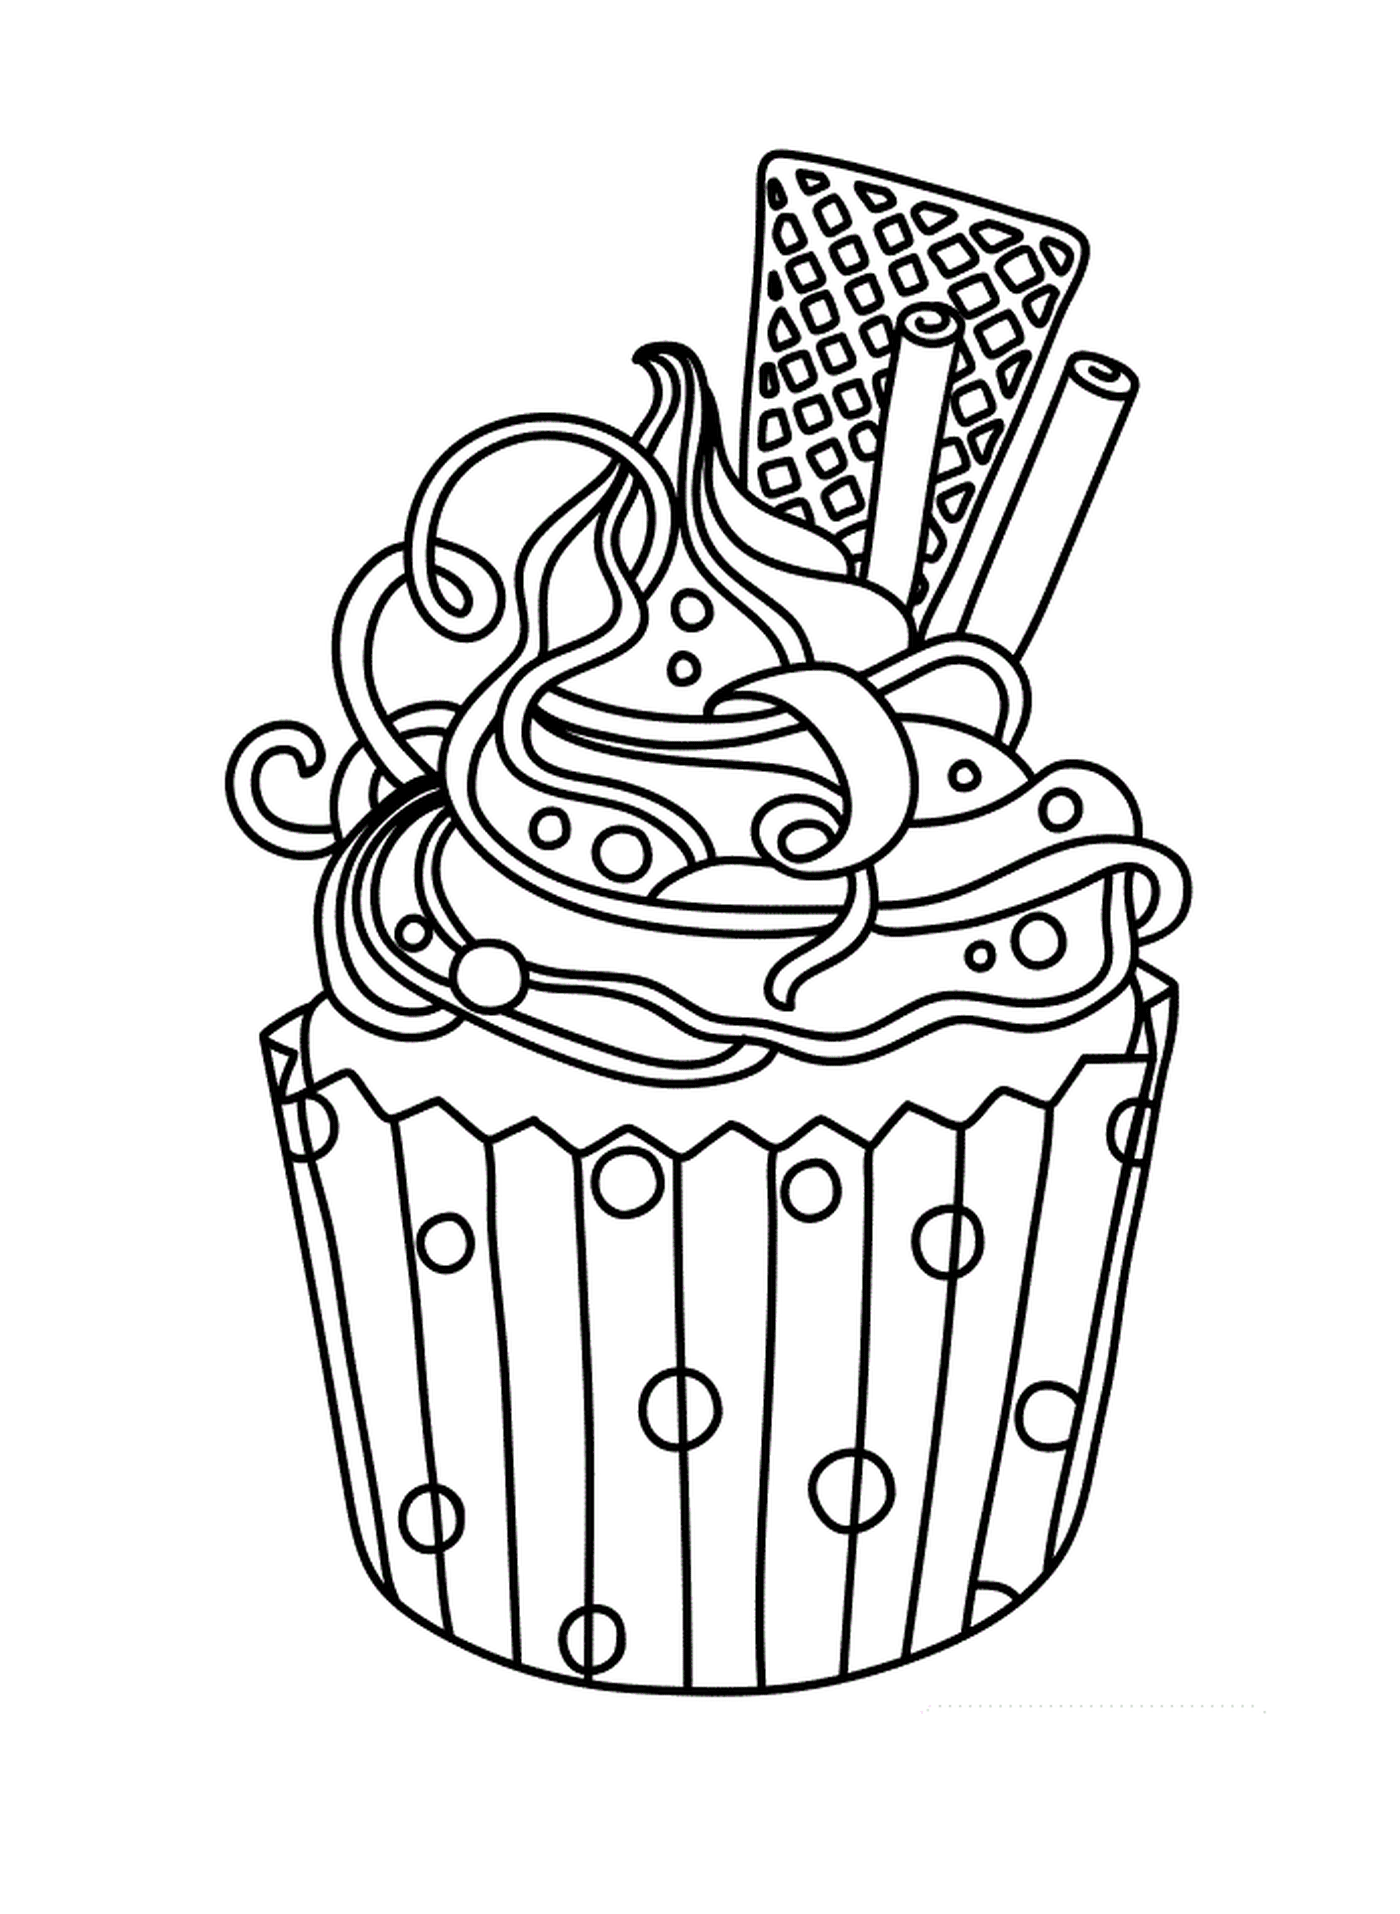  Ein farbiger Cupcake 